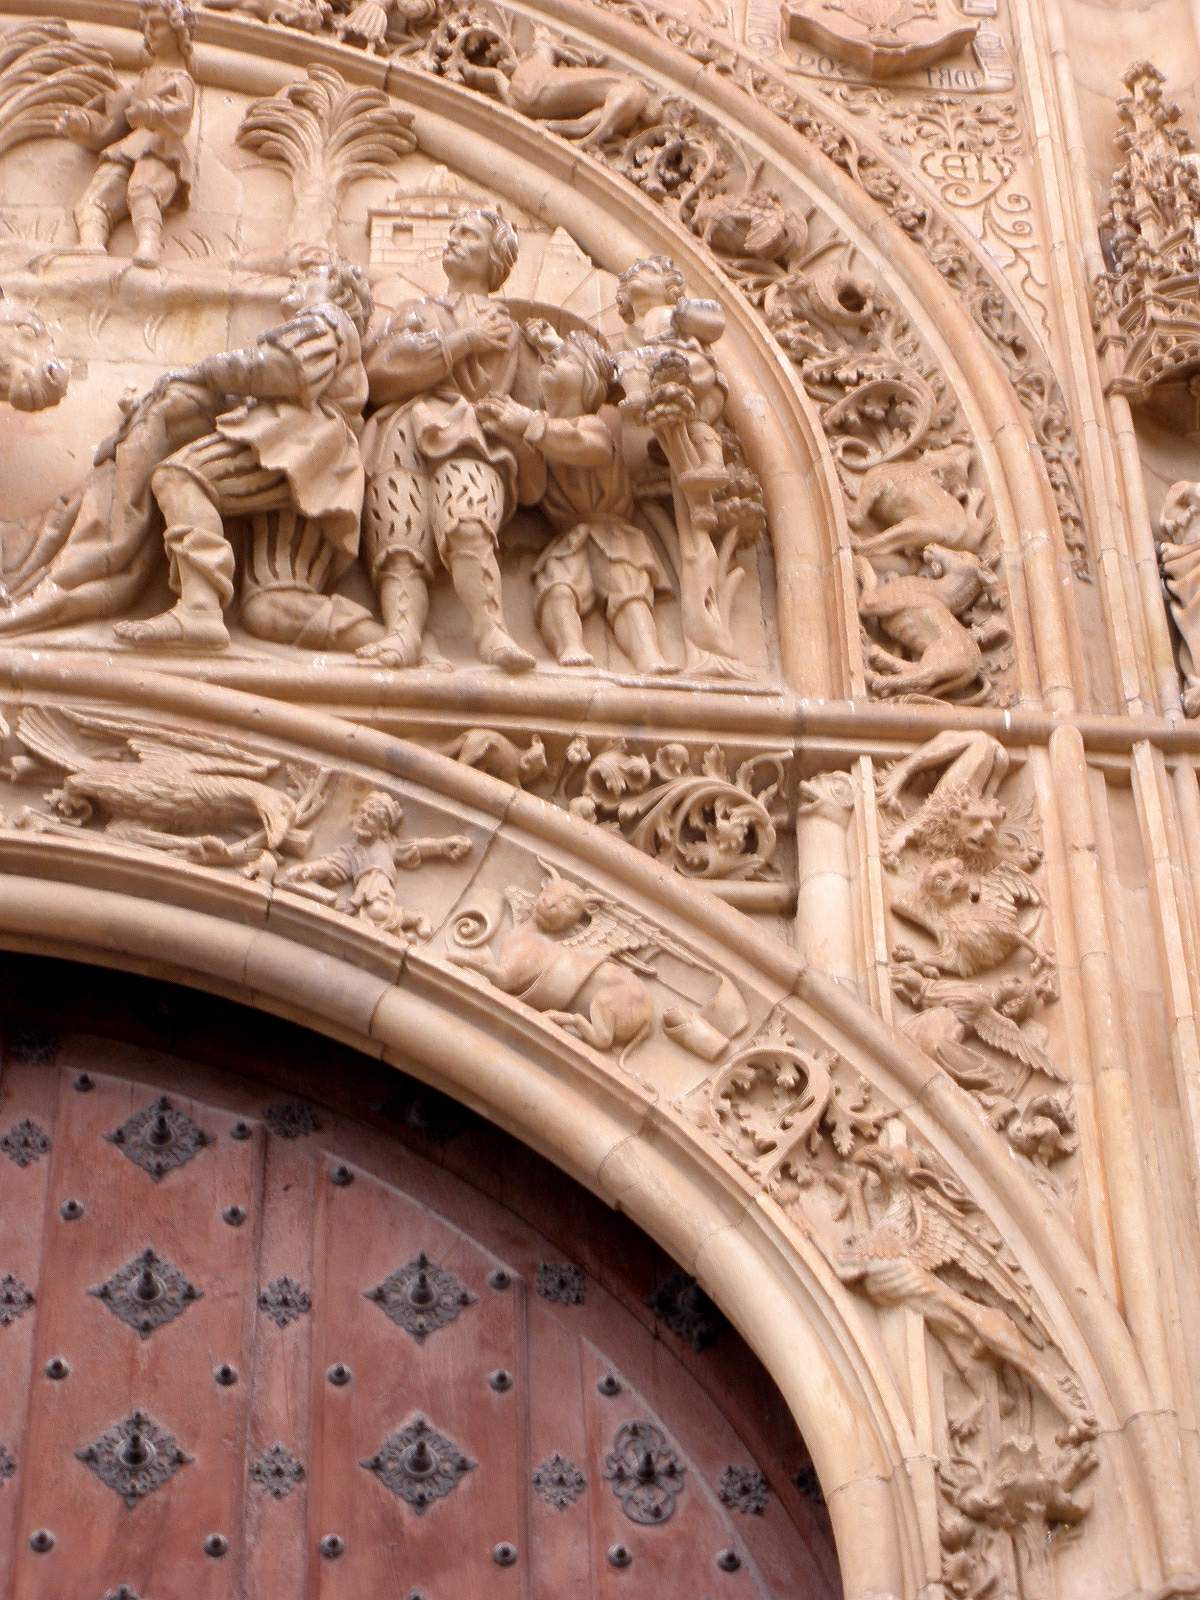 Estados Unidos Corbata Aislar File:Salamanca - Catedral Nueva, Puerta de Ramos 3.jpg - Wikimedia Commons